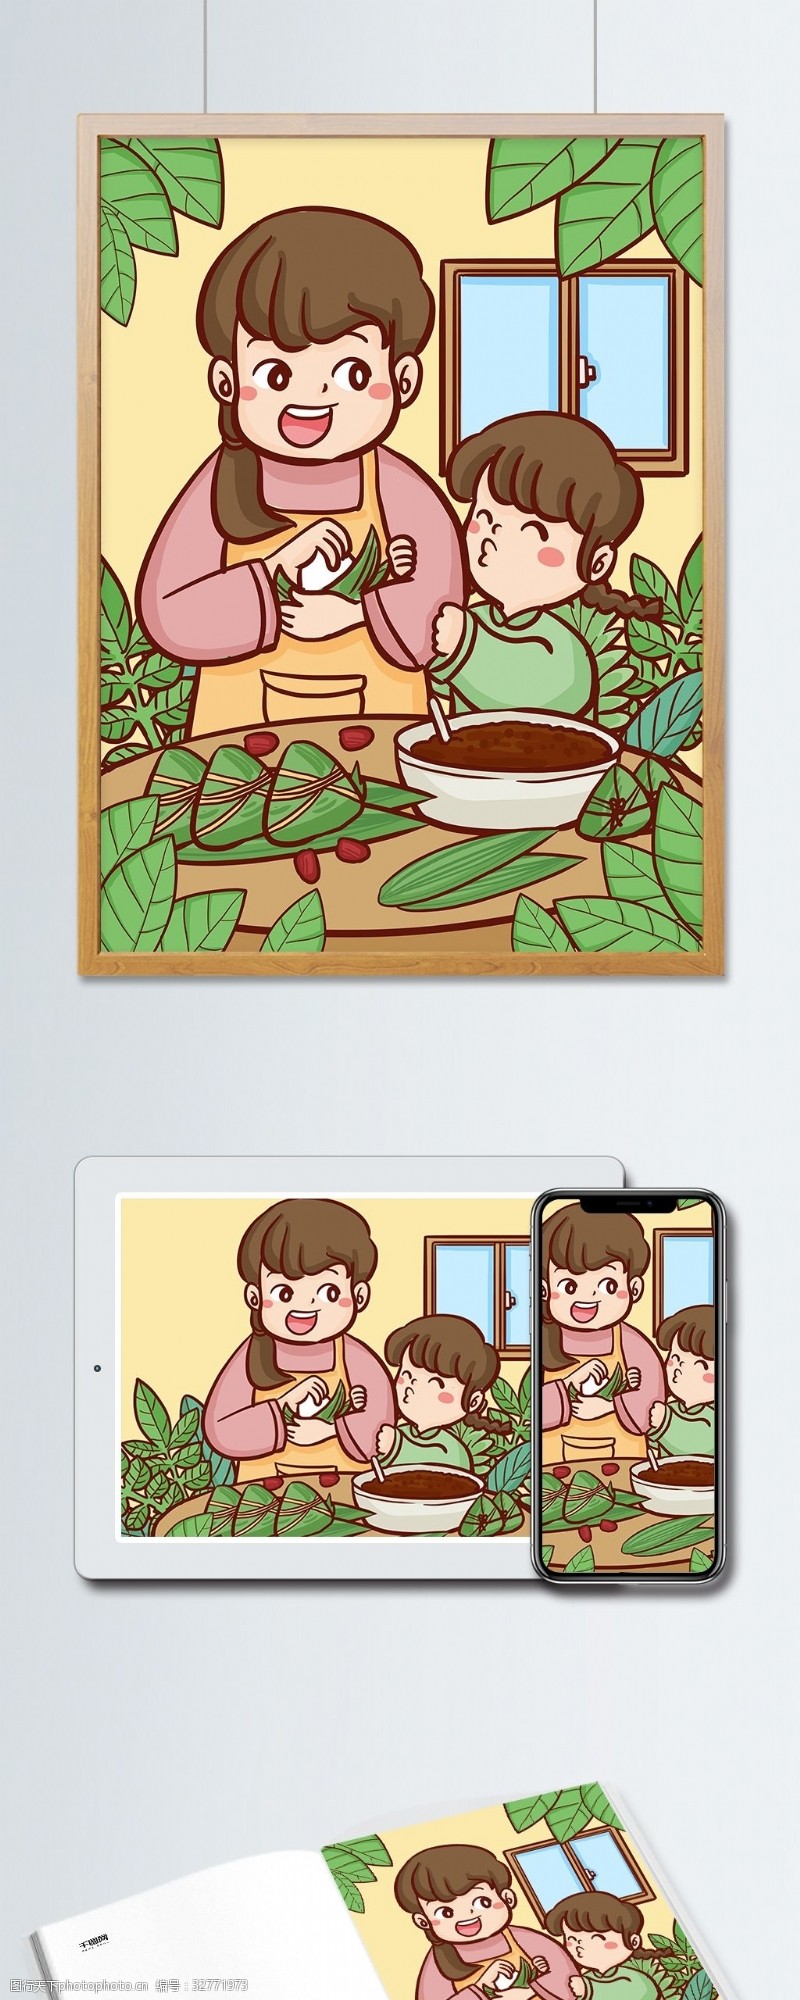 卡通粽子端午节传统节日妈妈教女儿包粽子手绘插画